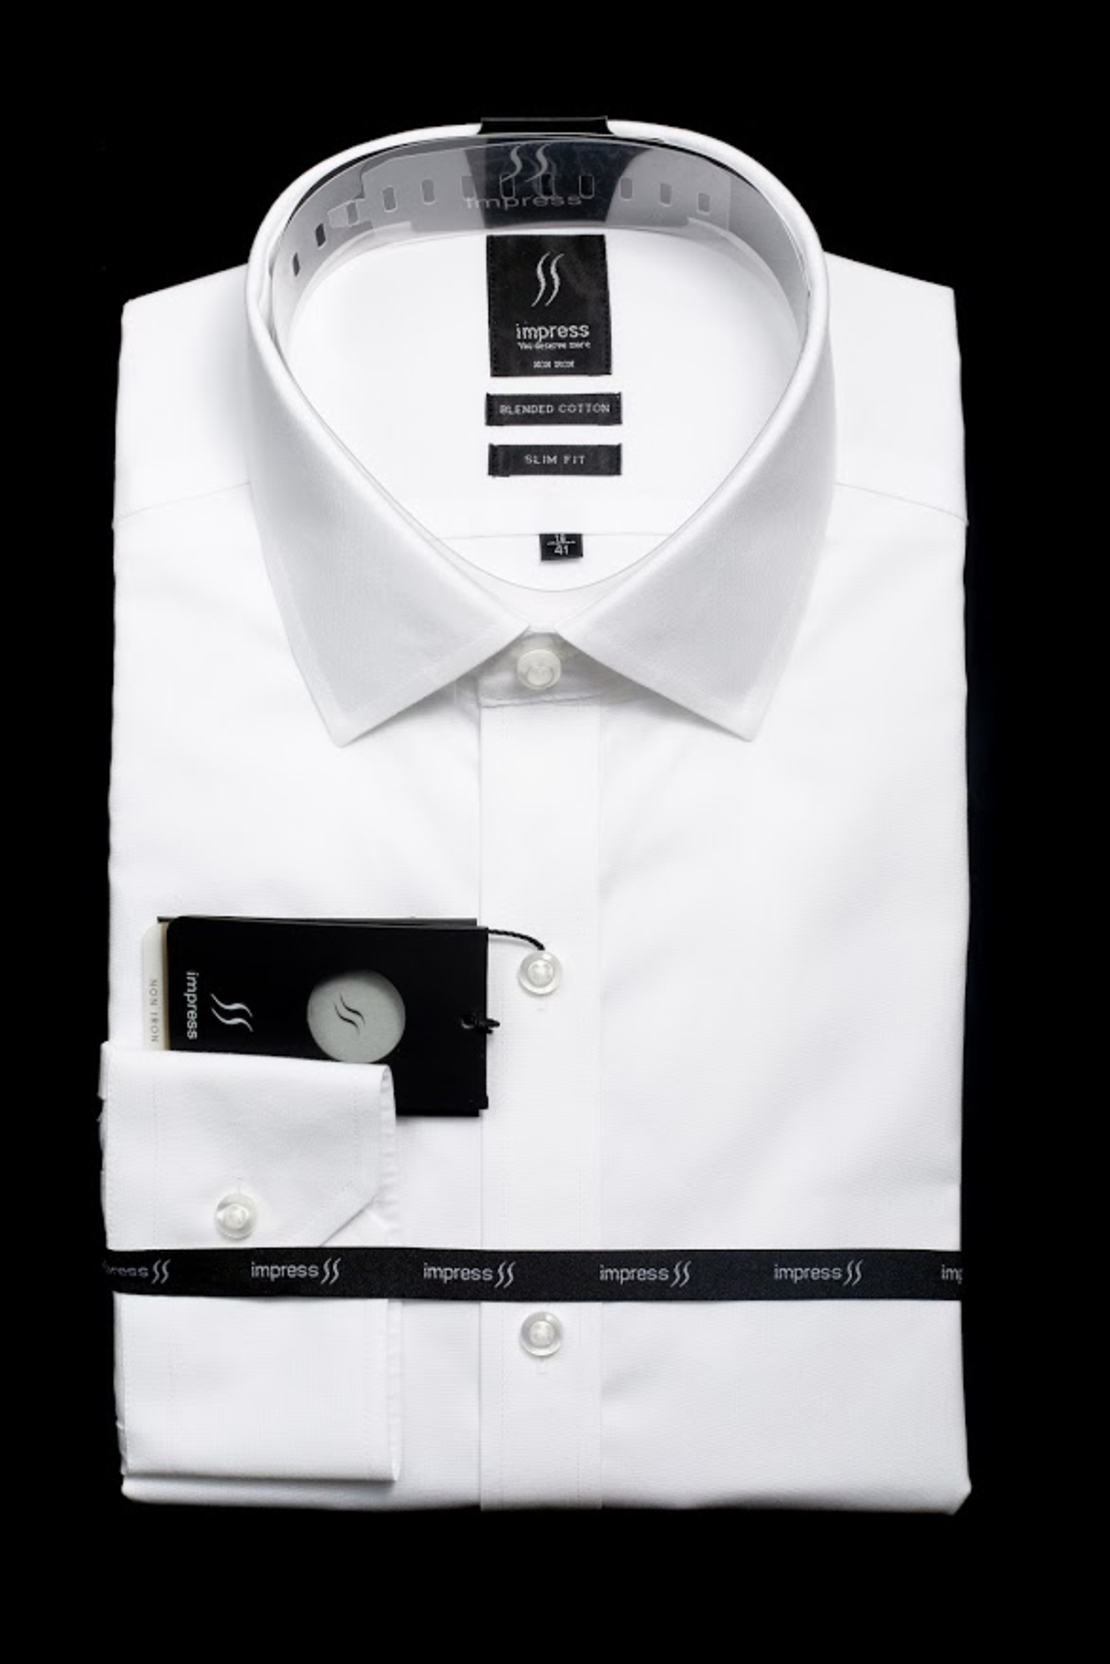 חולצה לבנה אימפרס 502 גזרה רגילה עם כיס